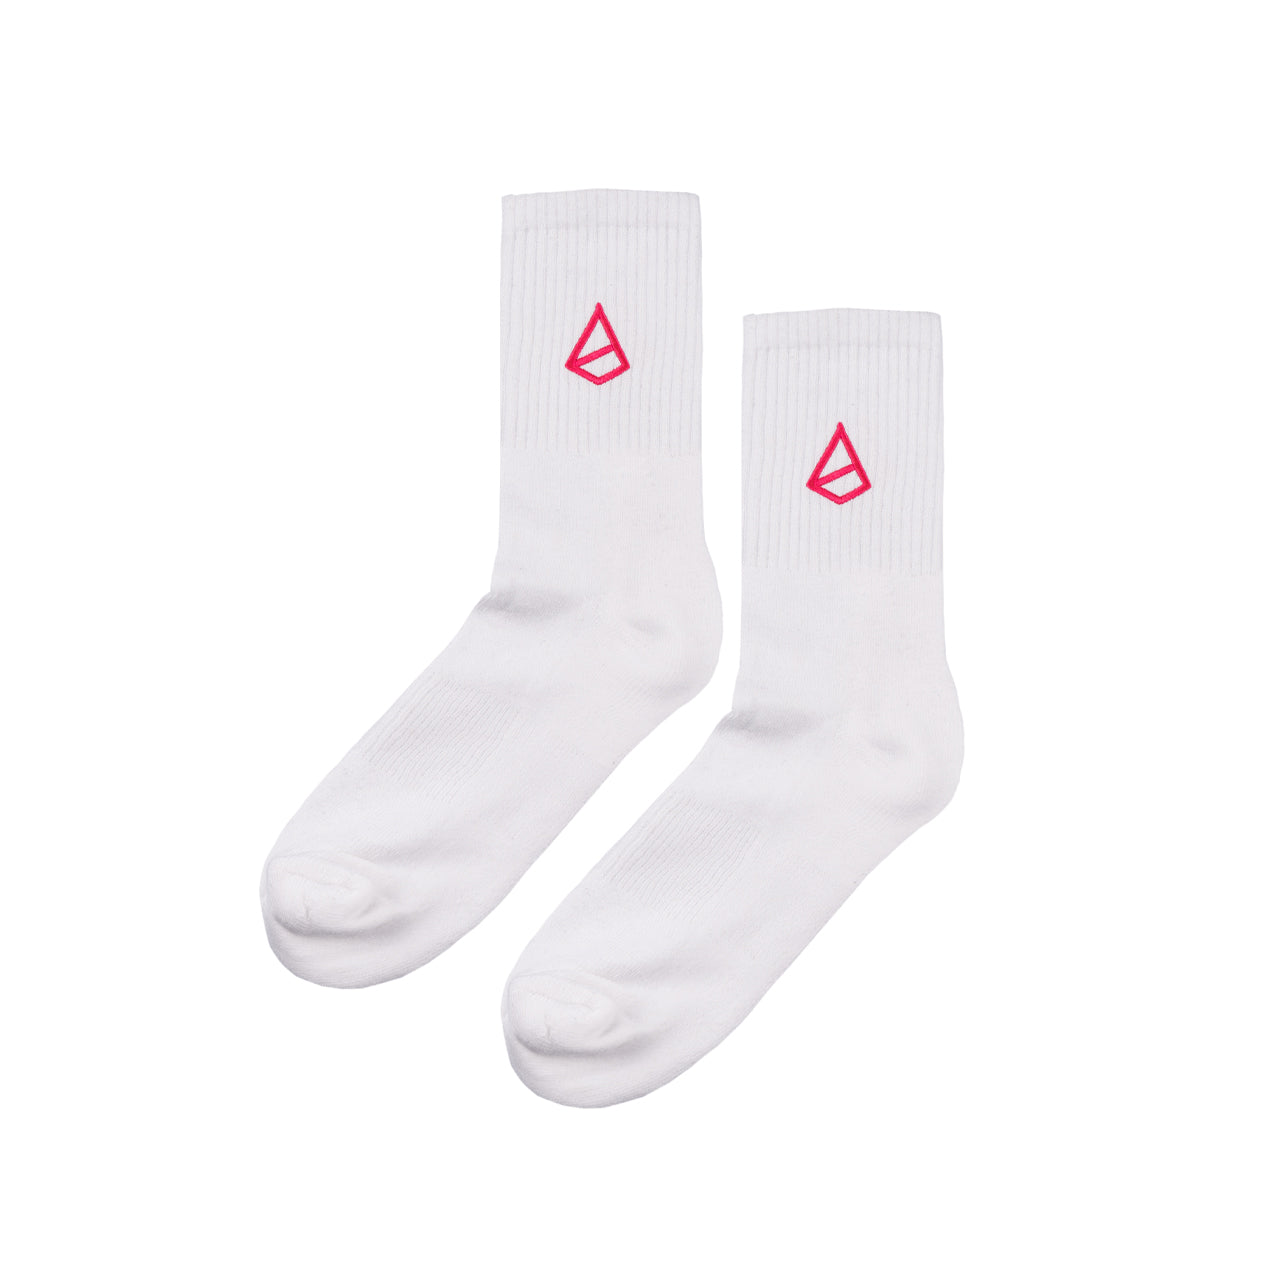 Snash - Emblem Socks White and Pink